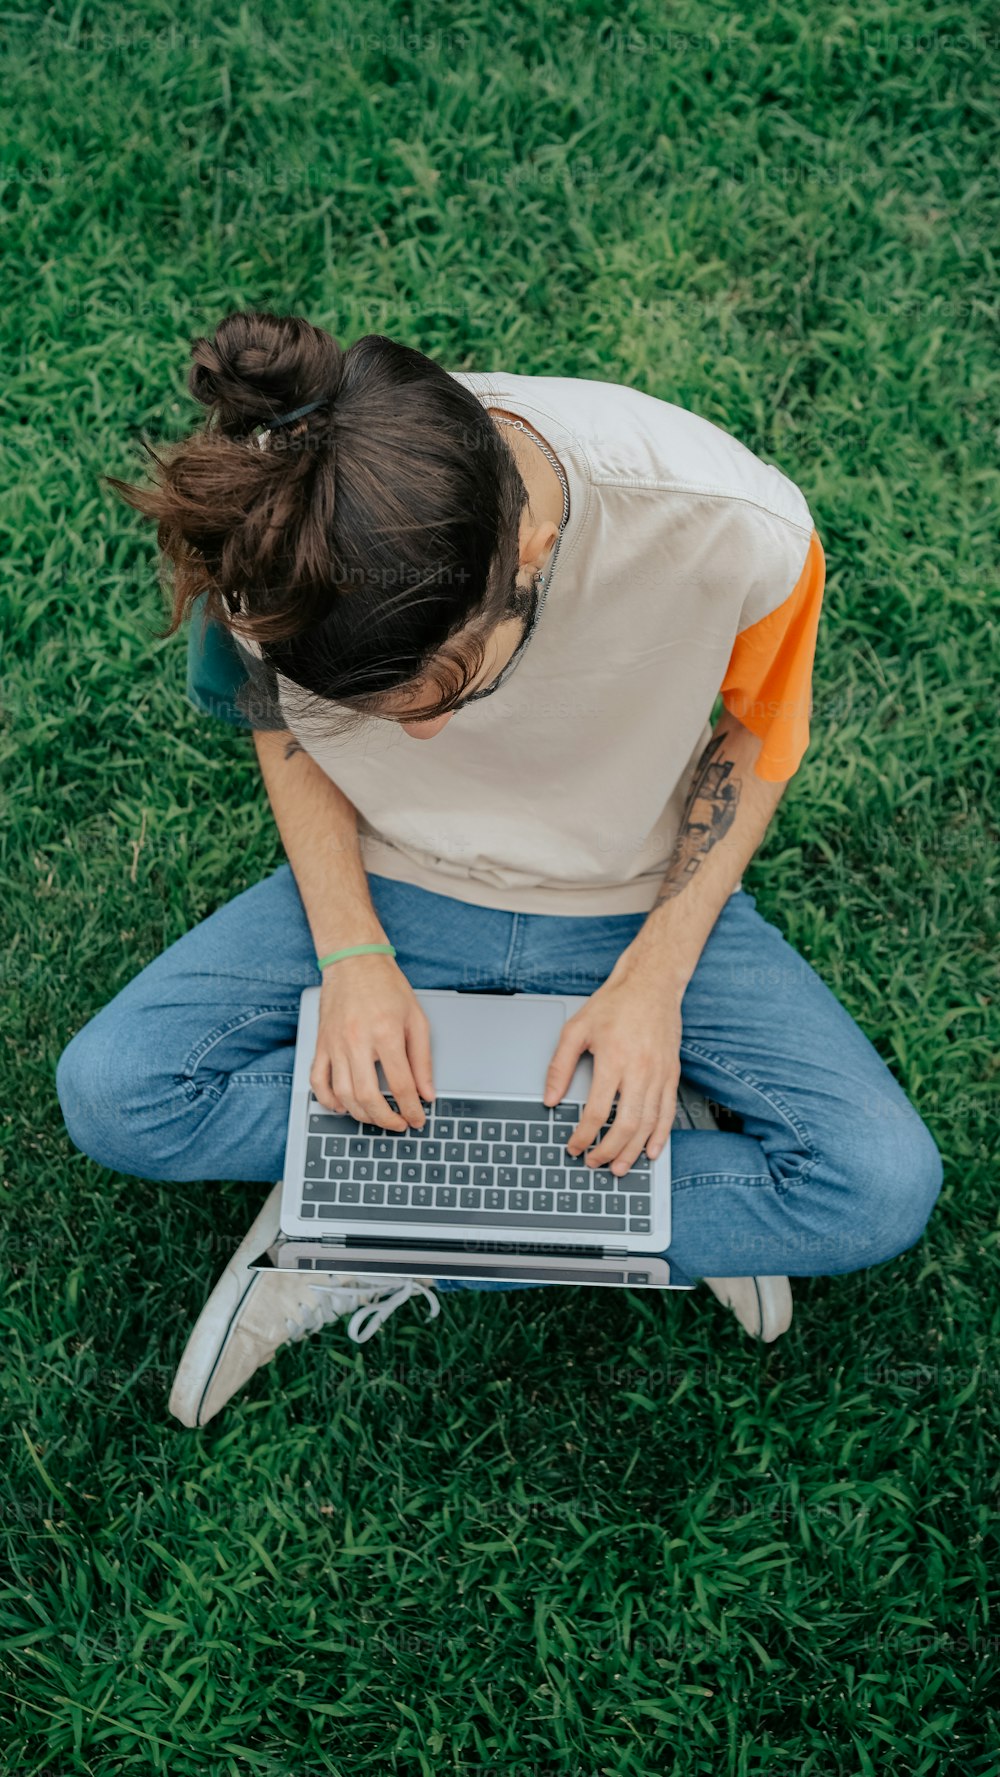 Una persona sentada en la hierba con una computadora portátil